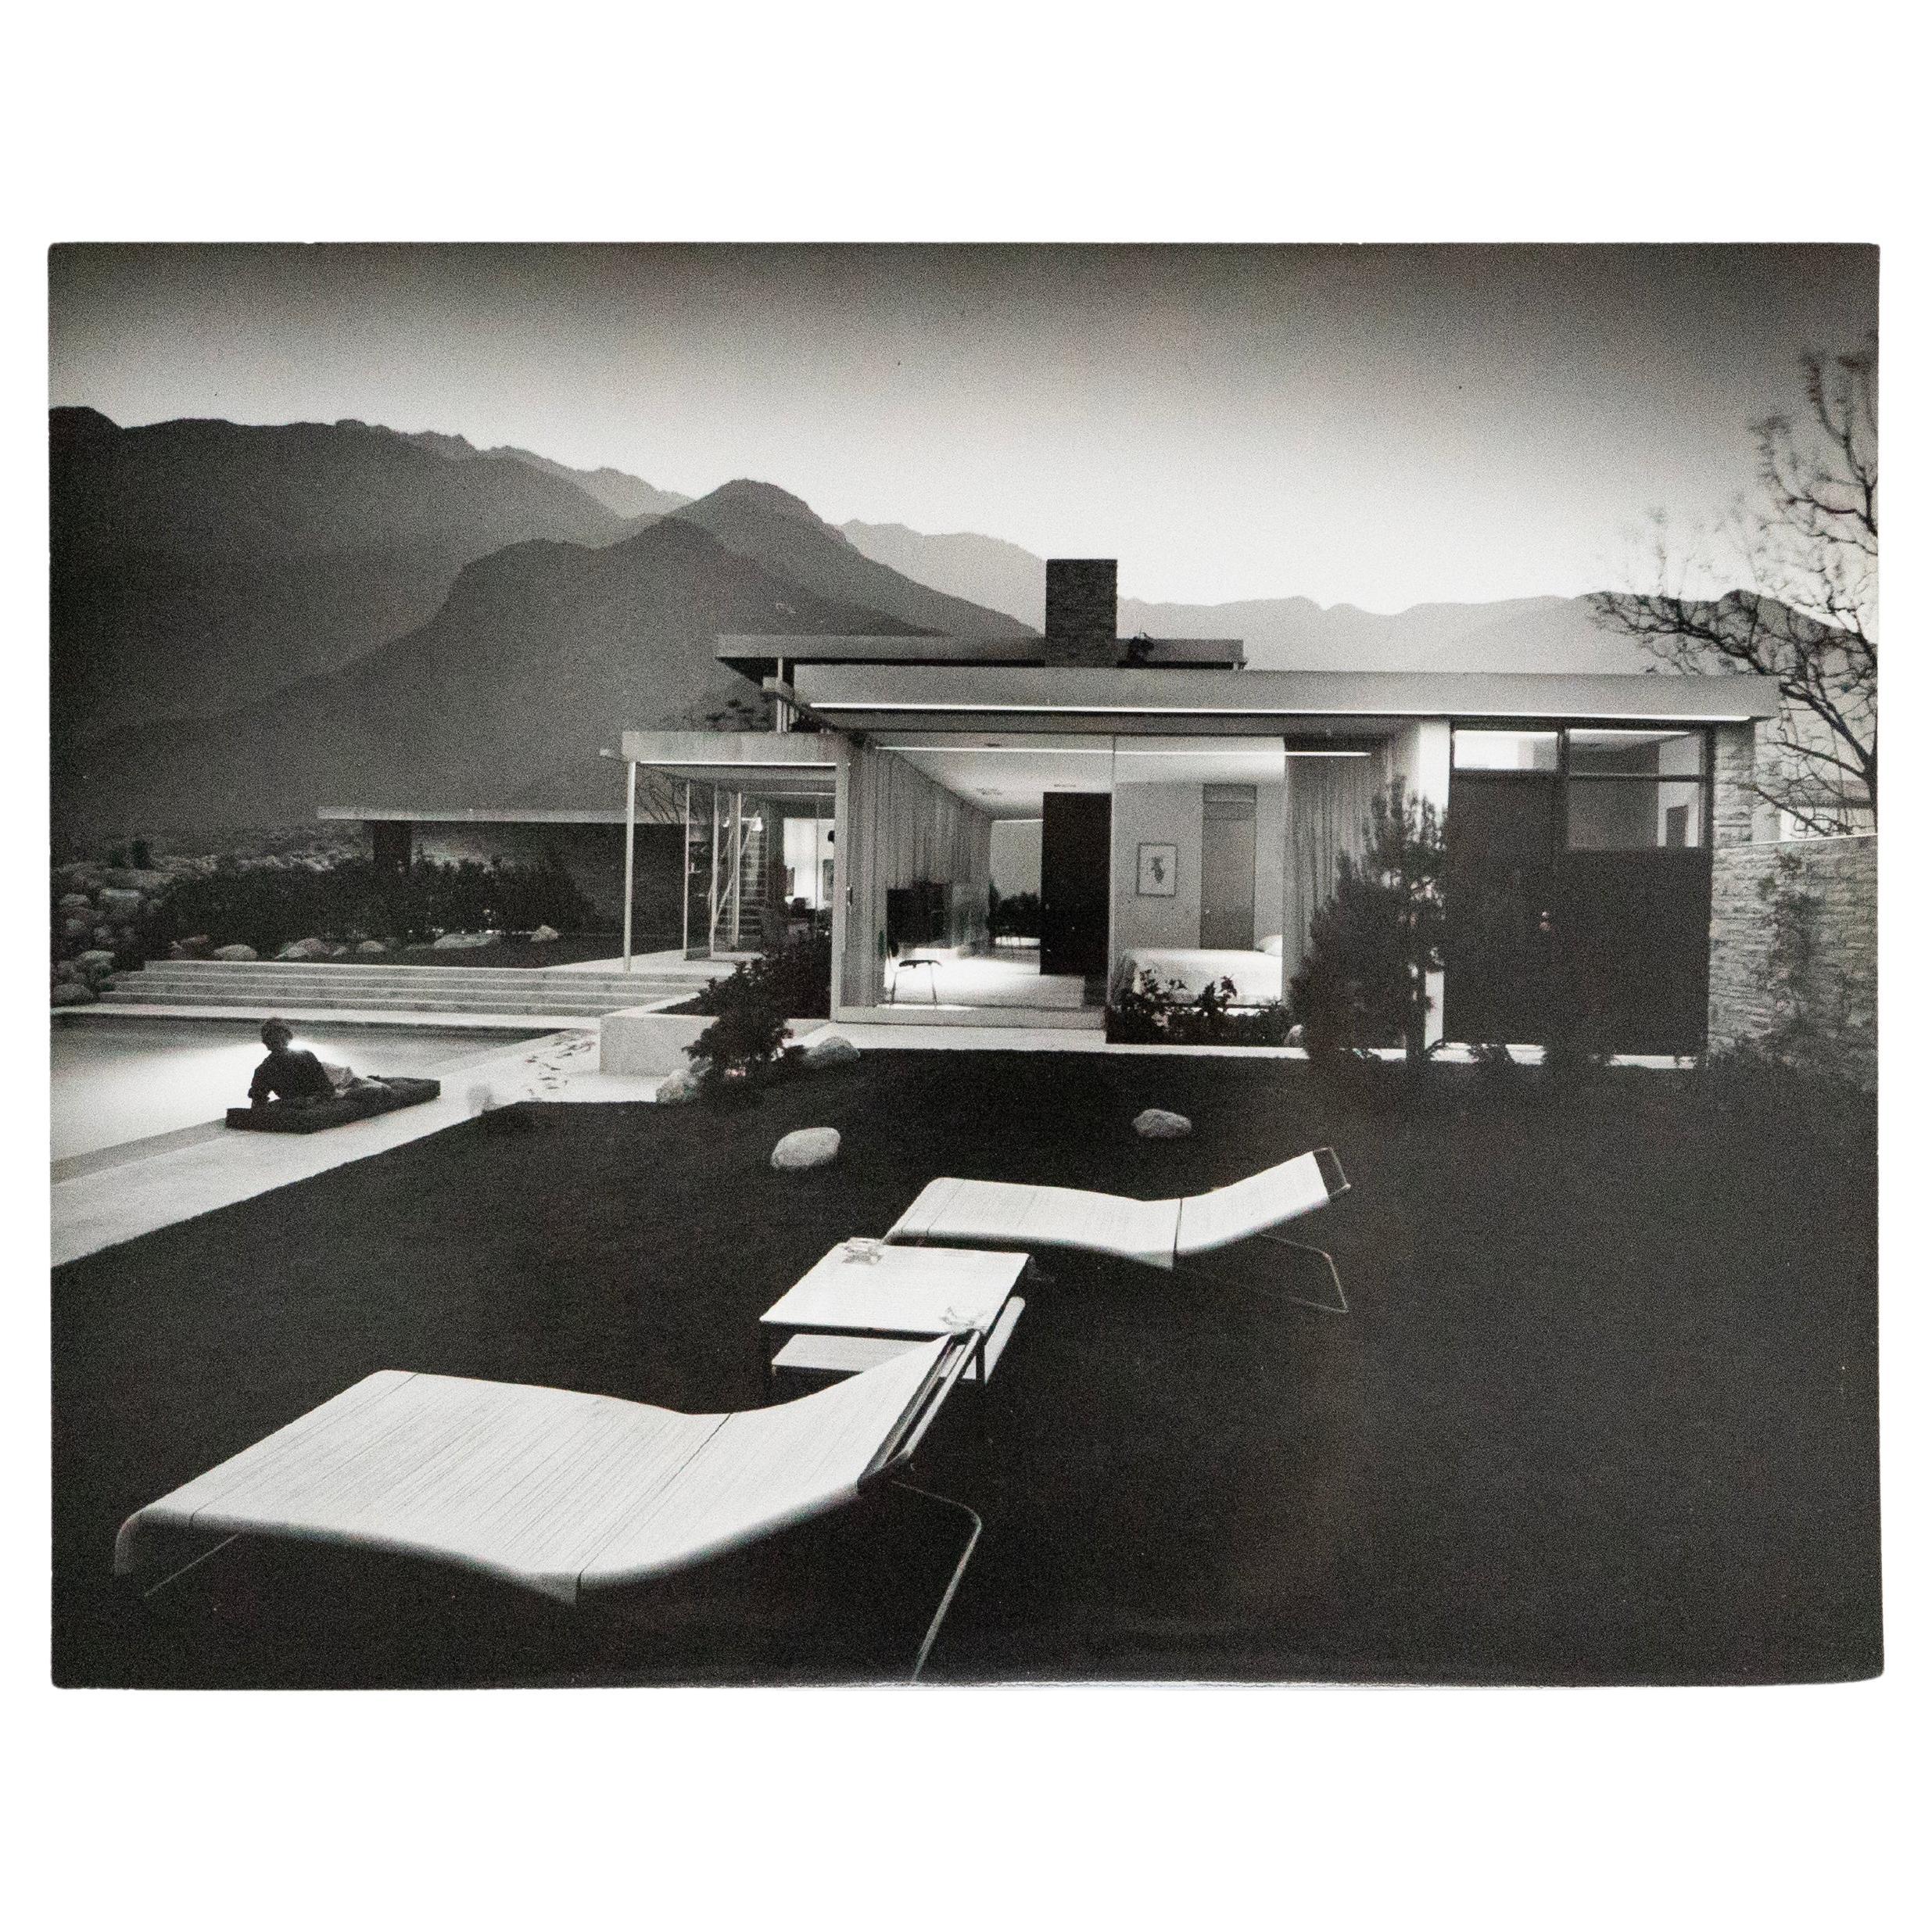 C. 1947 Fotografie von Julius Shulman von Kaufmann House von Richard Neutra, 8x10 in